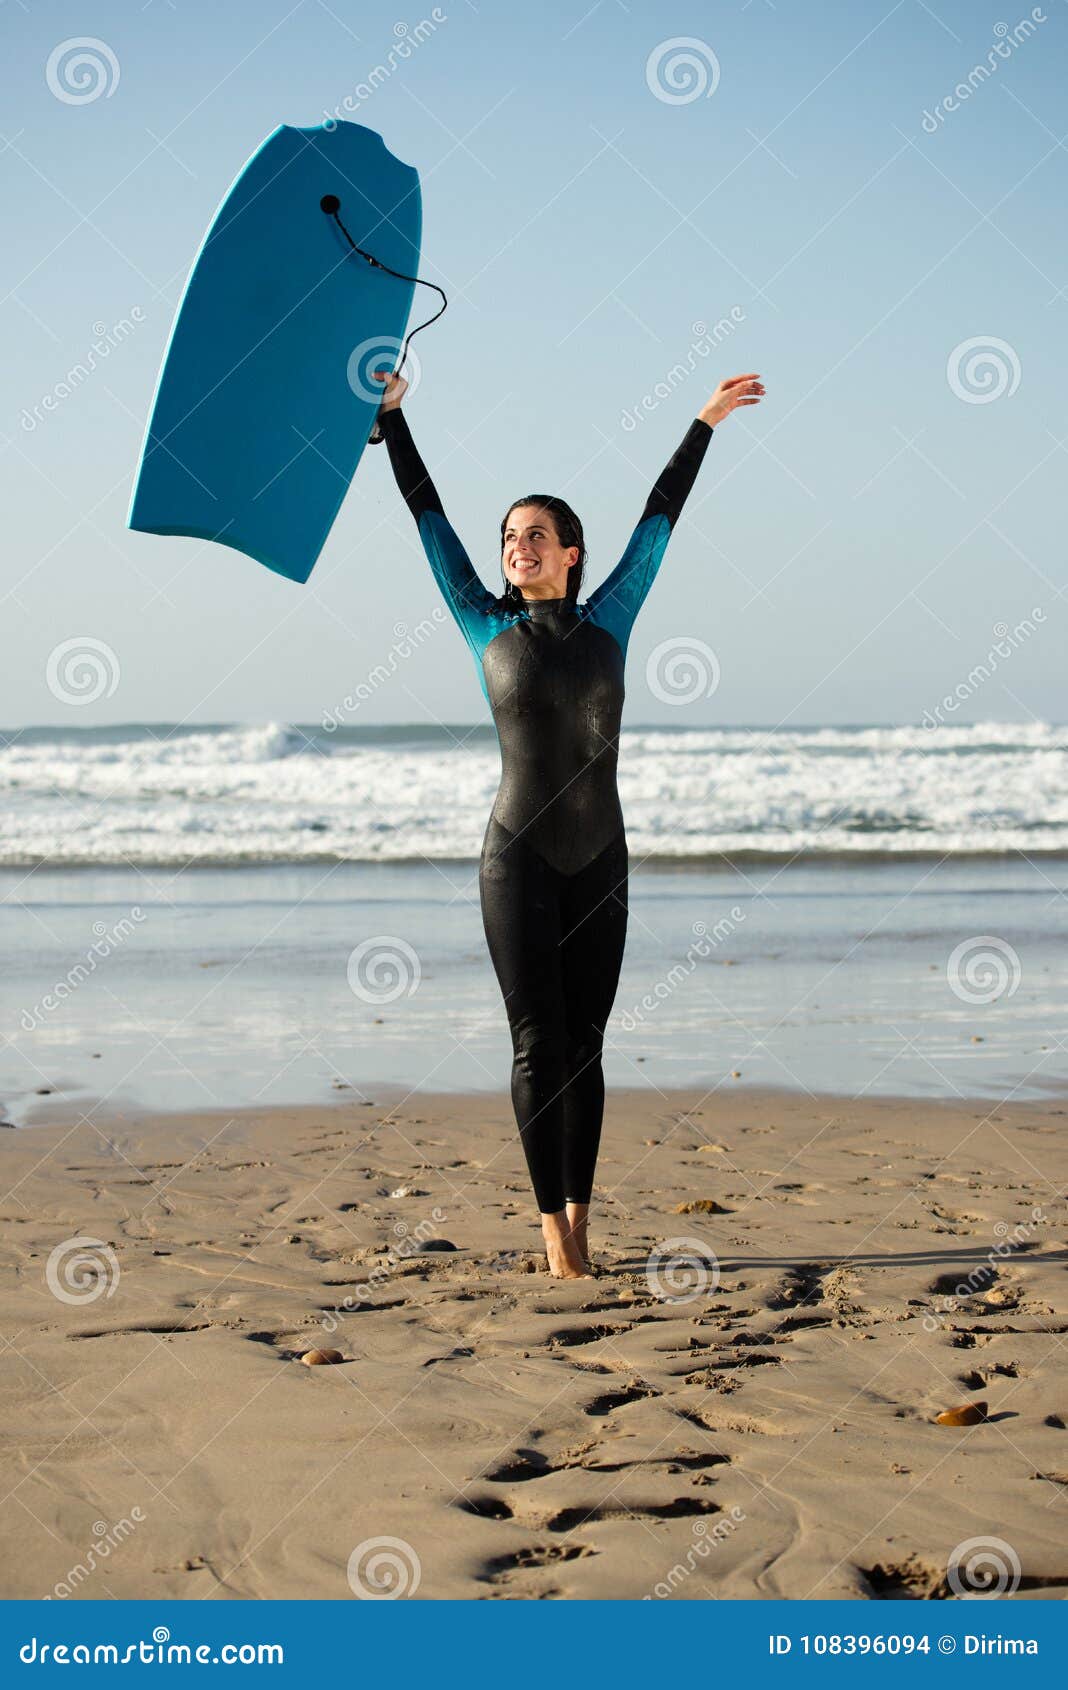 Mujer De La Persona Que Practica Surf Se Con Bodyboard En La Playa Foto de archivo - Imagen de éxito, deporte: